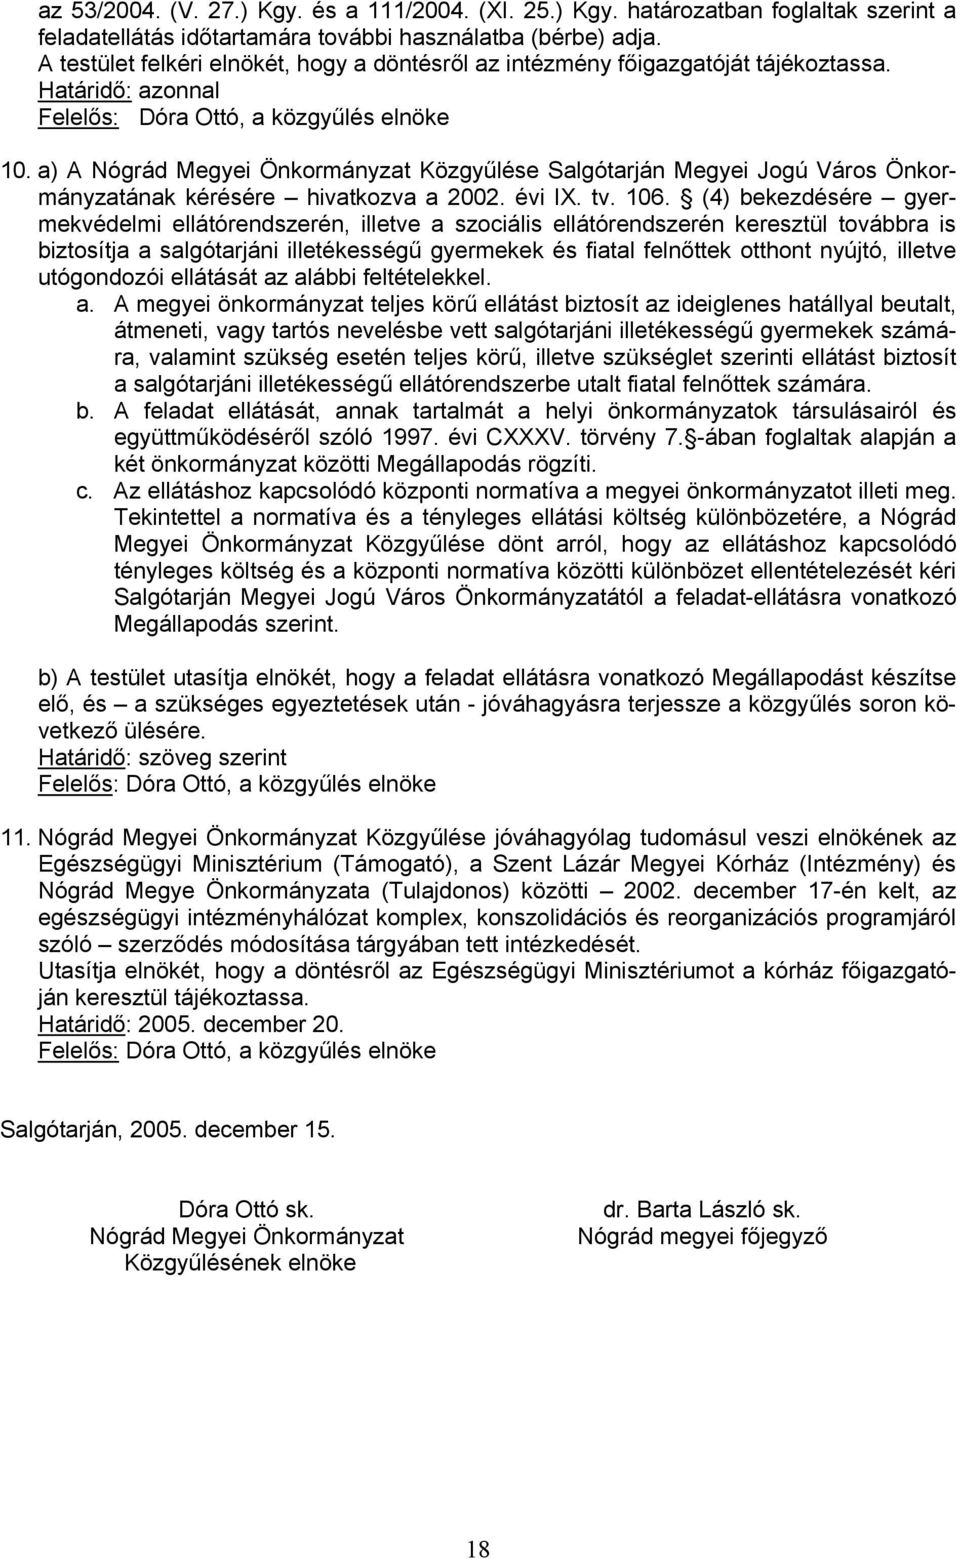 a) A Nógrád Megyei Önkormányzat Közgyűlése Salgótarján Megyei Jogú Város Önkormányzatának kérésére hivatkozva a 2002. évi IX. tv. 106.